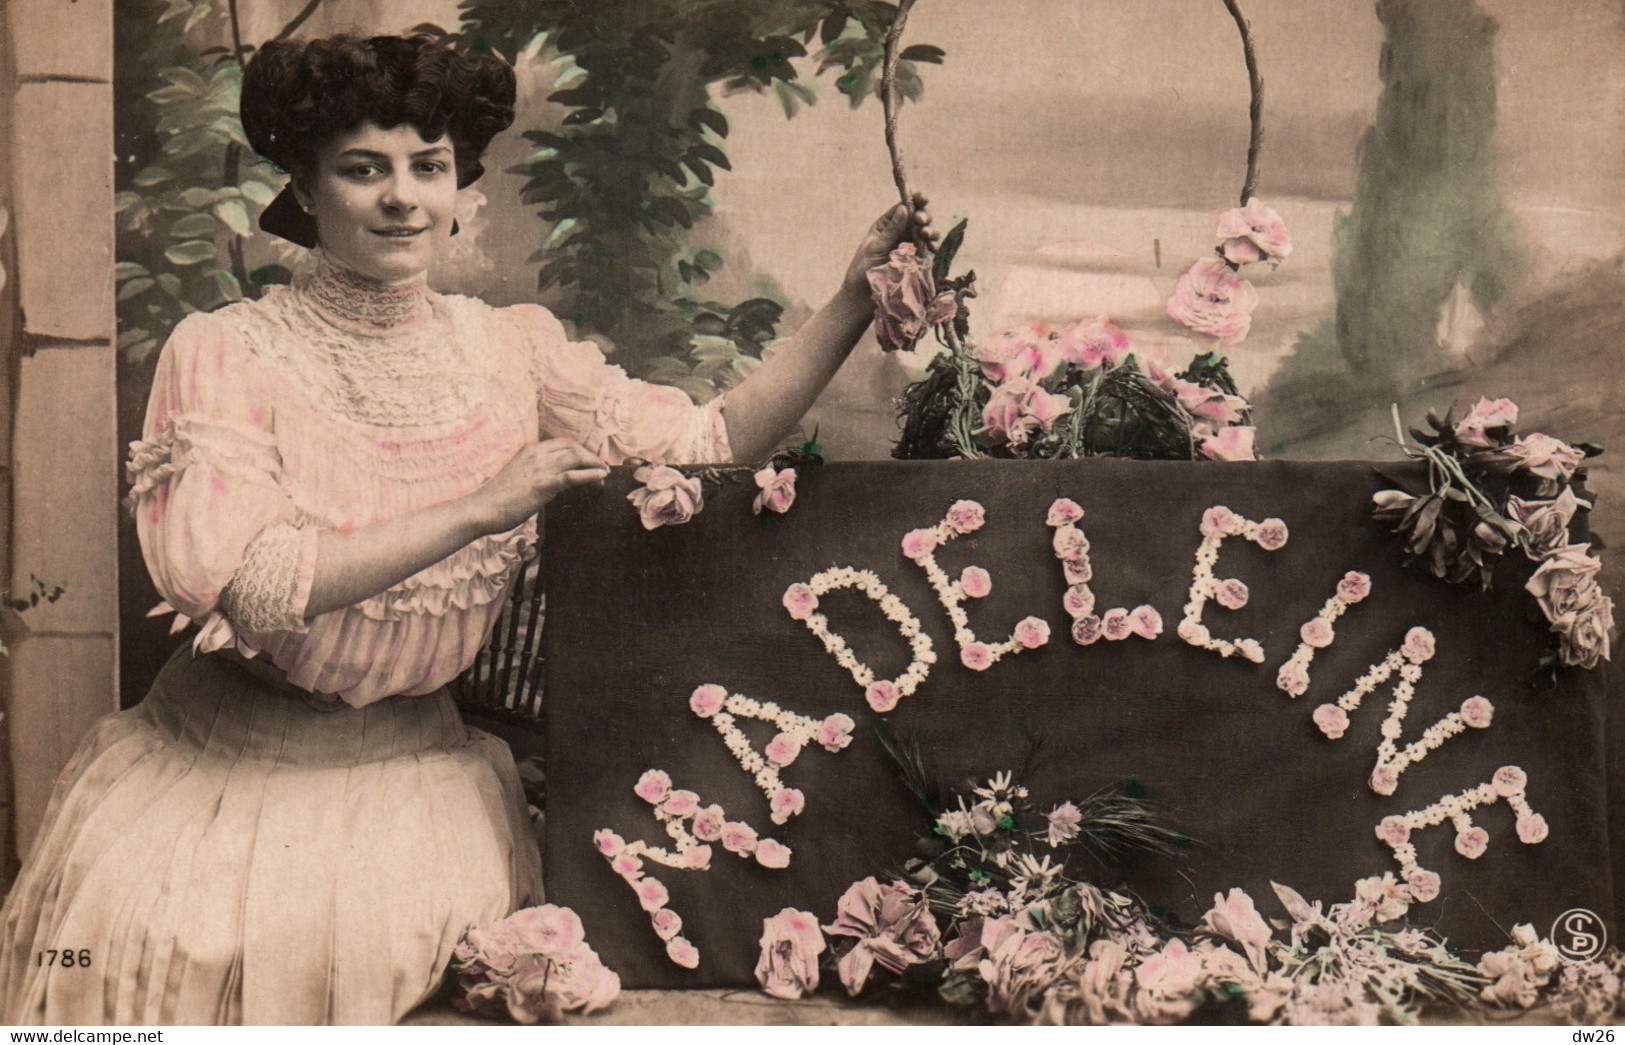 Prénom Madeleine, Femme Et Fleurs - Carte S.I.P. N° 1786 Non Circulée - Prénoms